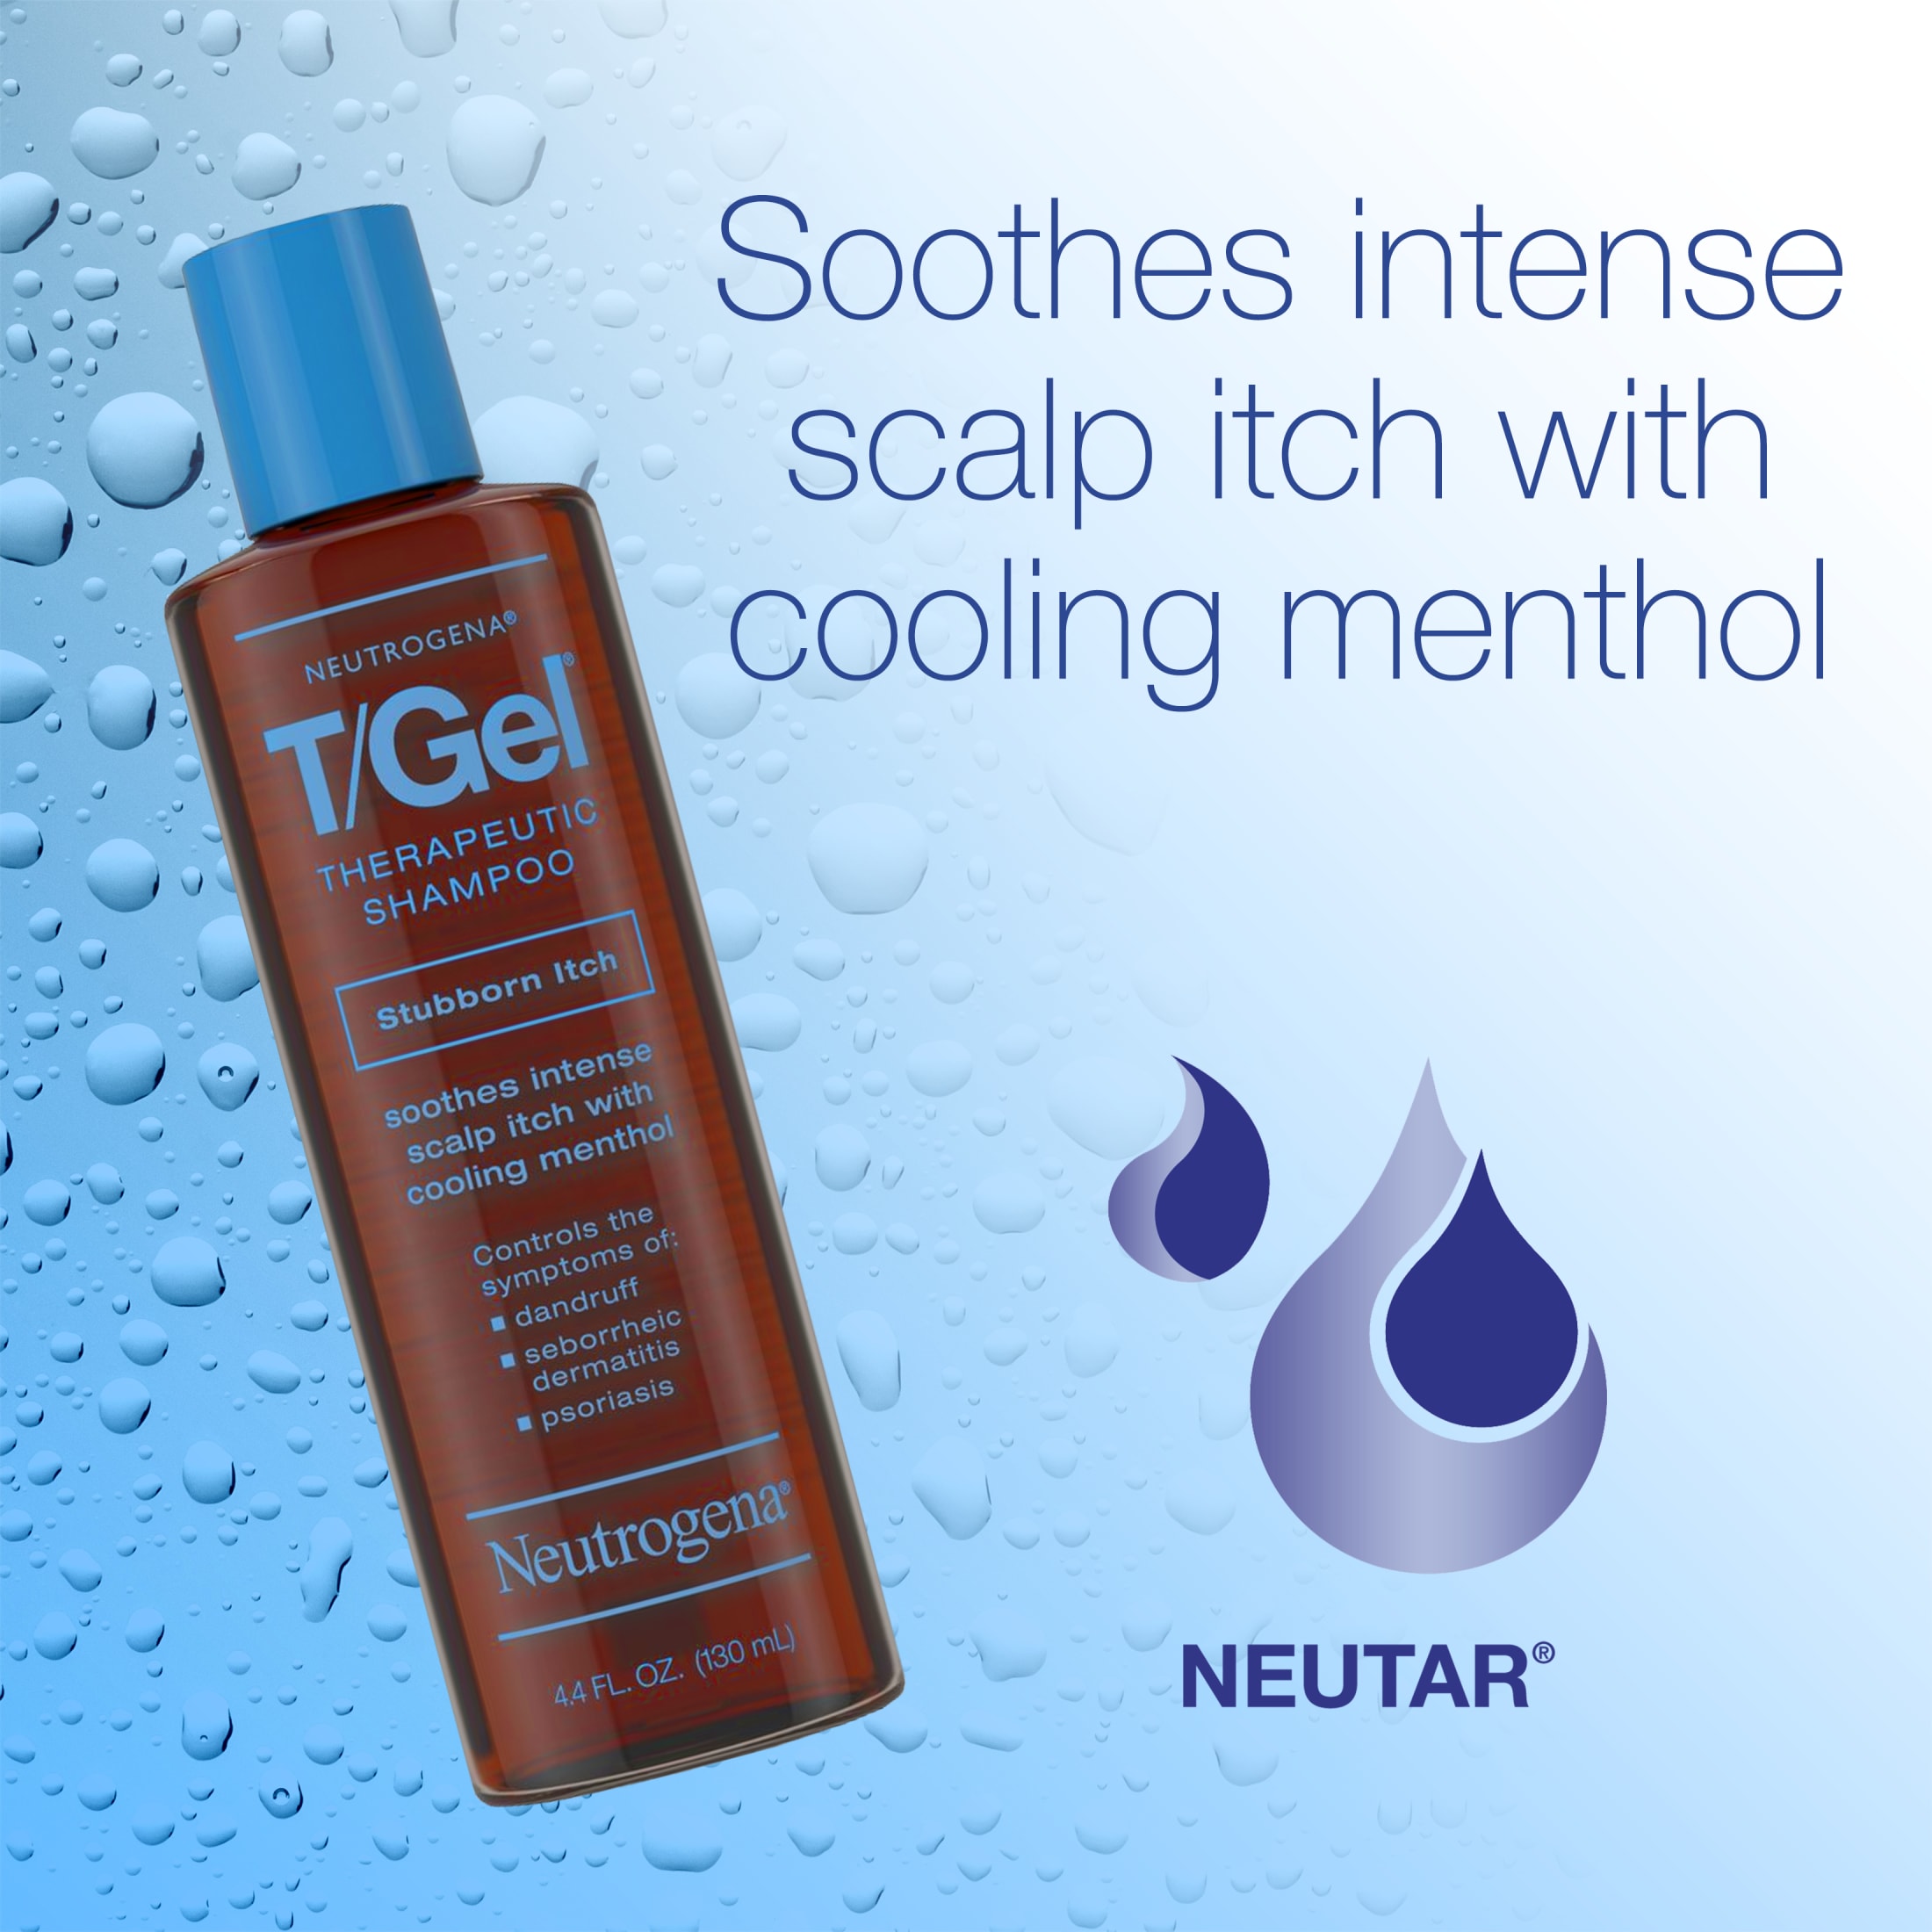 Neutrogena T/Gel Stubborn Itch Therapeutic Dandruff Shampoo, 4.4 fl. oz - image 3 of 12